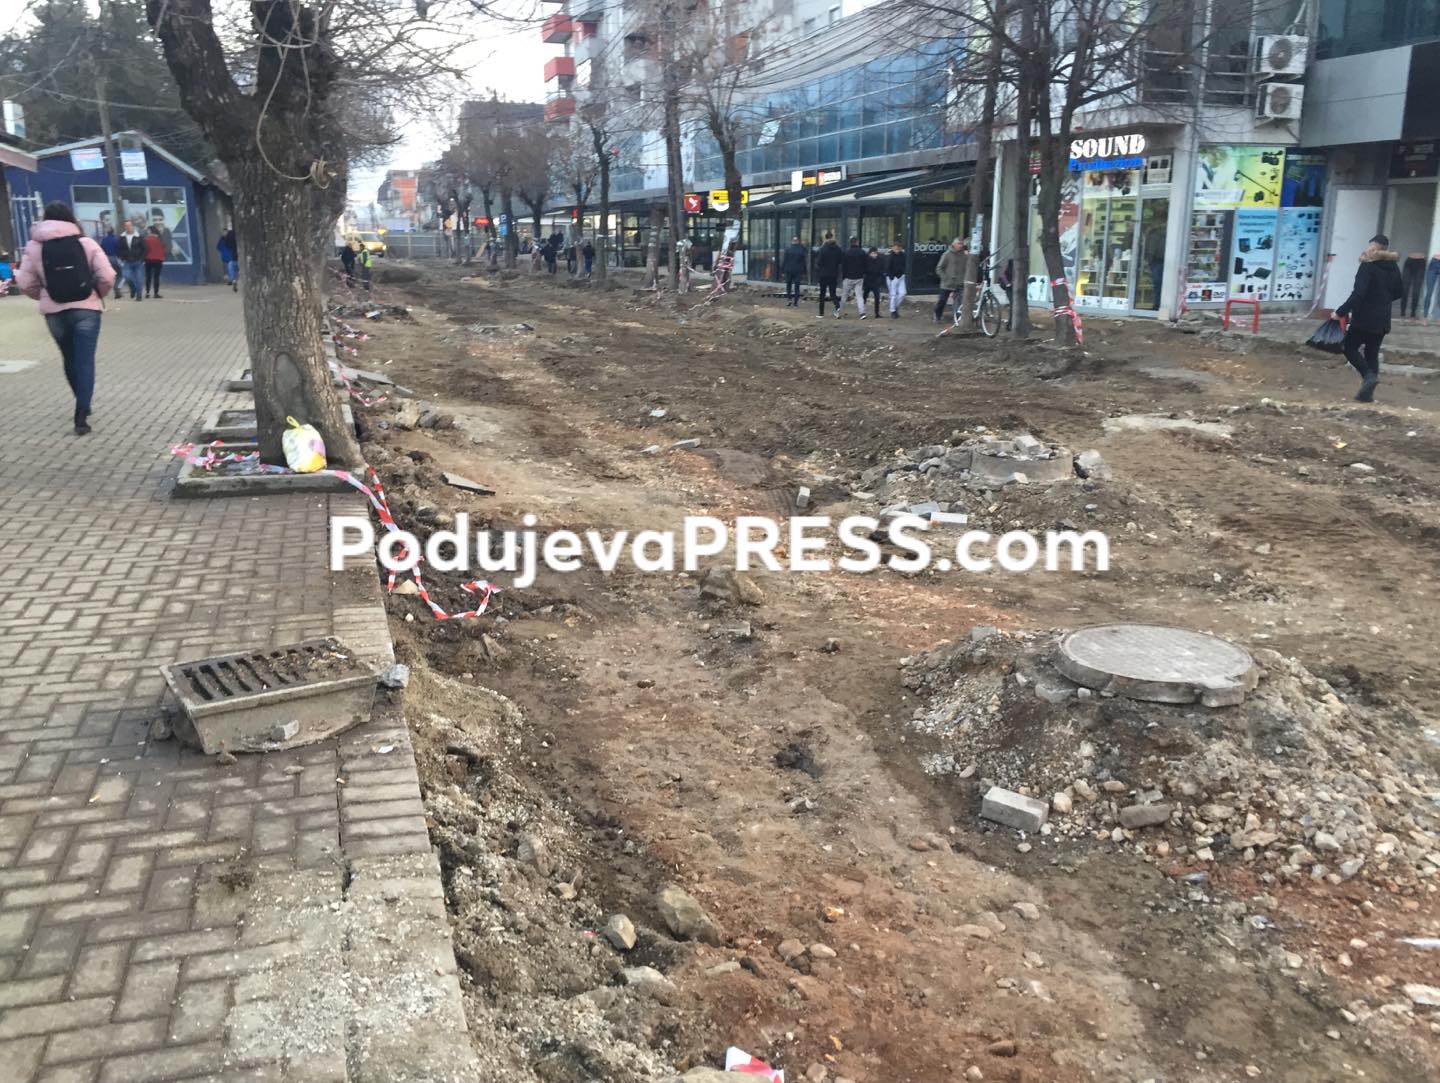  Kjo është gjendja tani në qendrën e qytetit në Podujevë | PAMJE